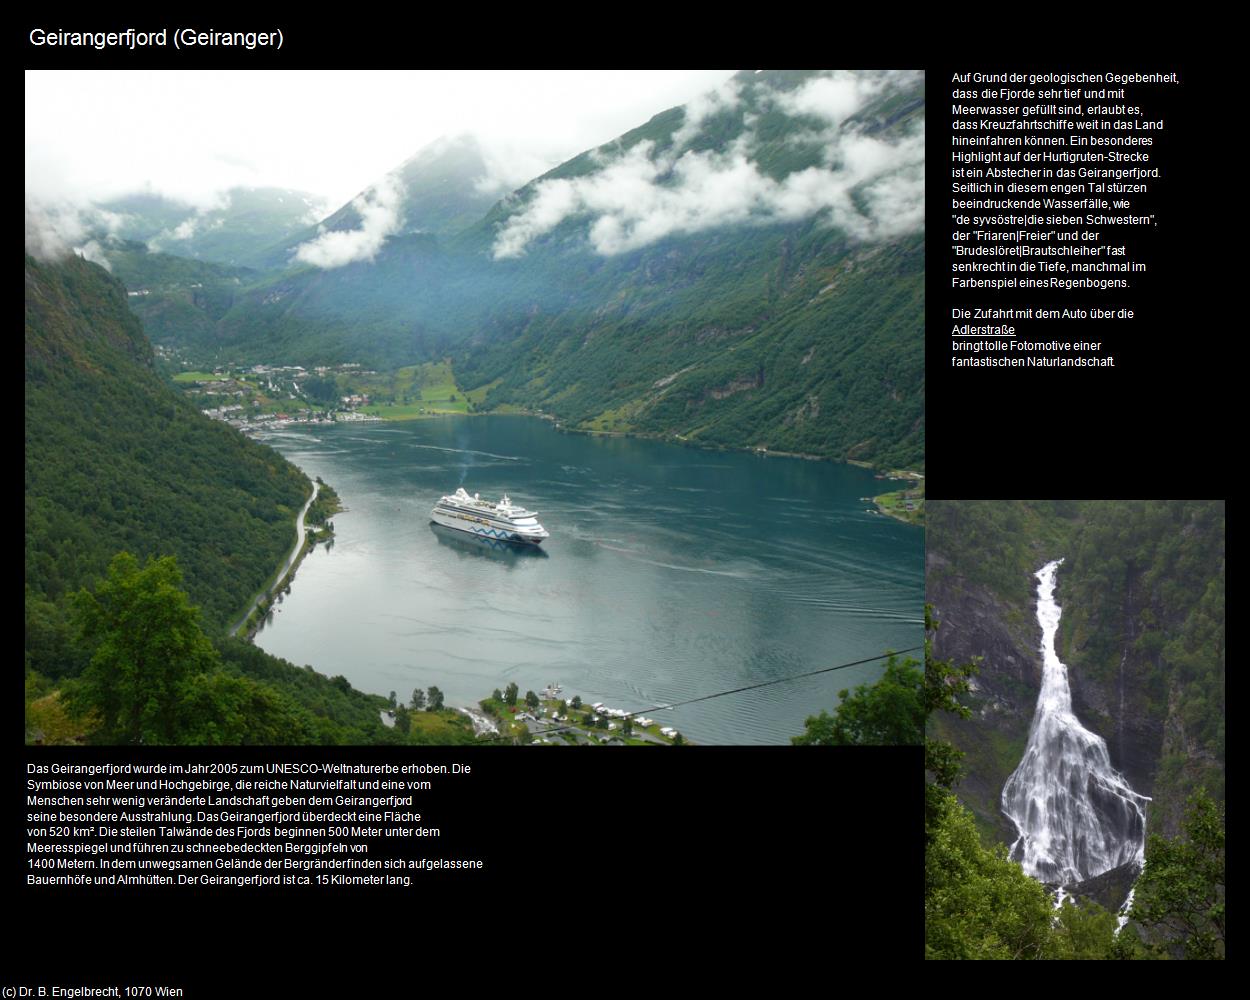 Geirangerfjord (Geiranger) in Kulturatlas-REISE nach NORWEGEN(c)B.Engelbrecht